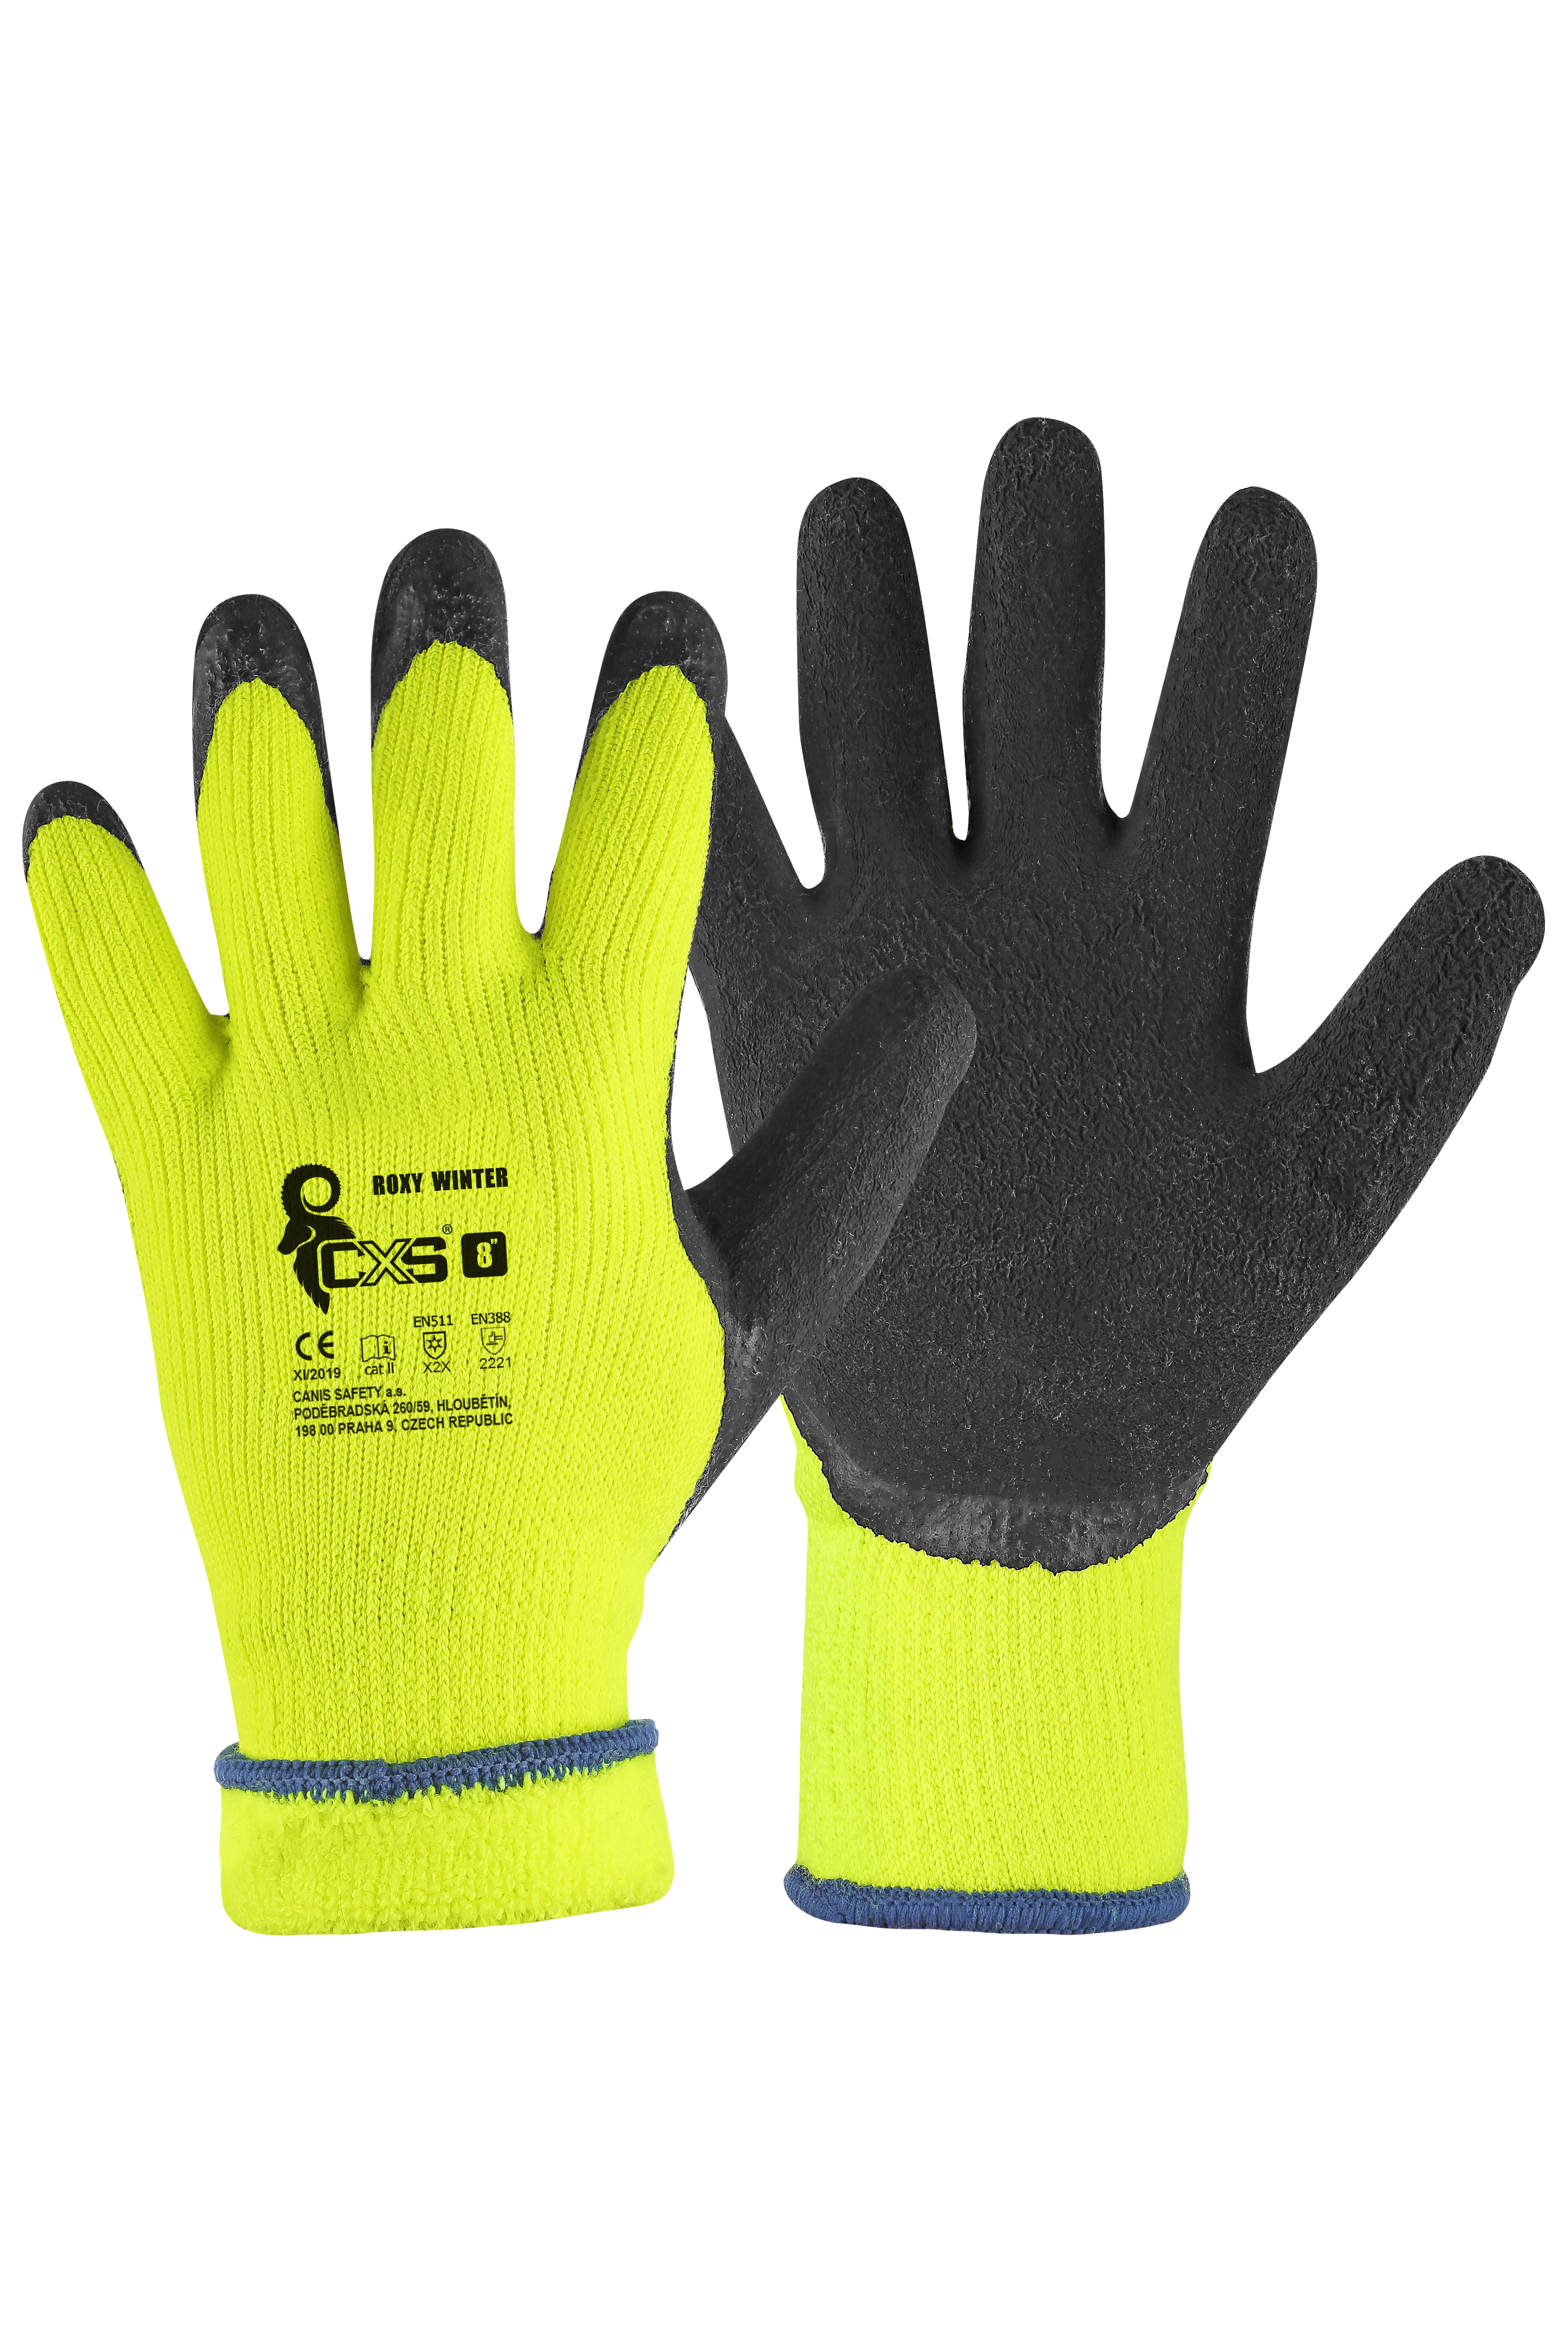 rukavice Roxy Winter, zimní, máčené v latexu, velikost 9 0.10 Kg TOP Sklad4 606068 108